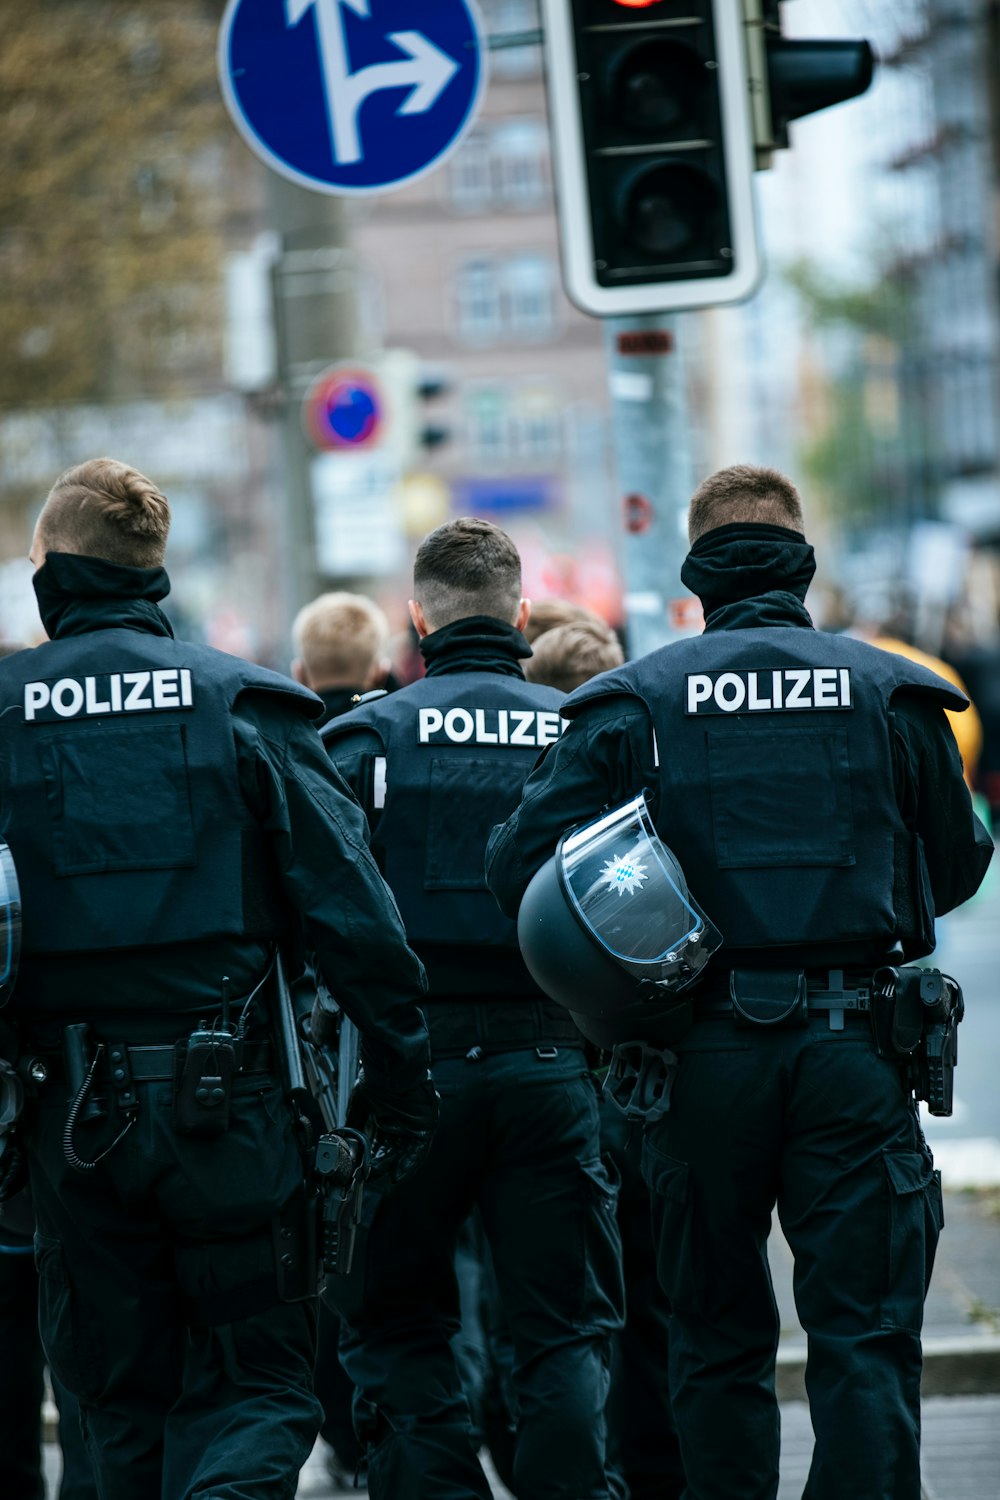 policiais em uniforme policial preto e azul em pé na rua durante o dia